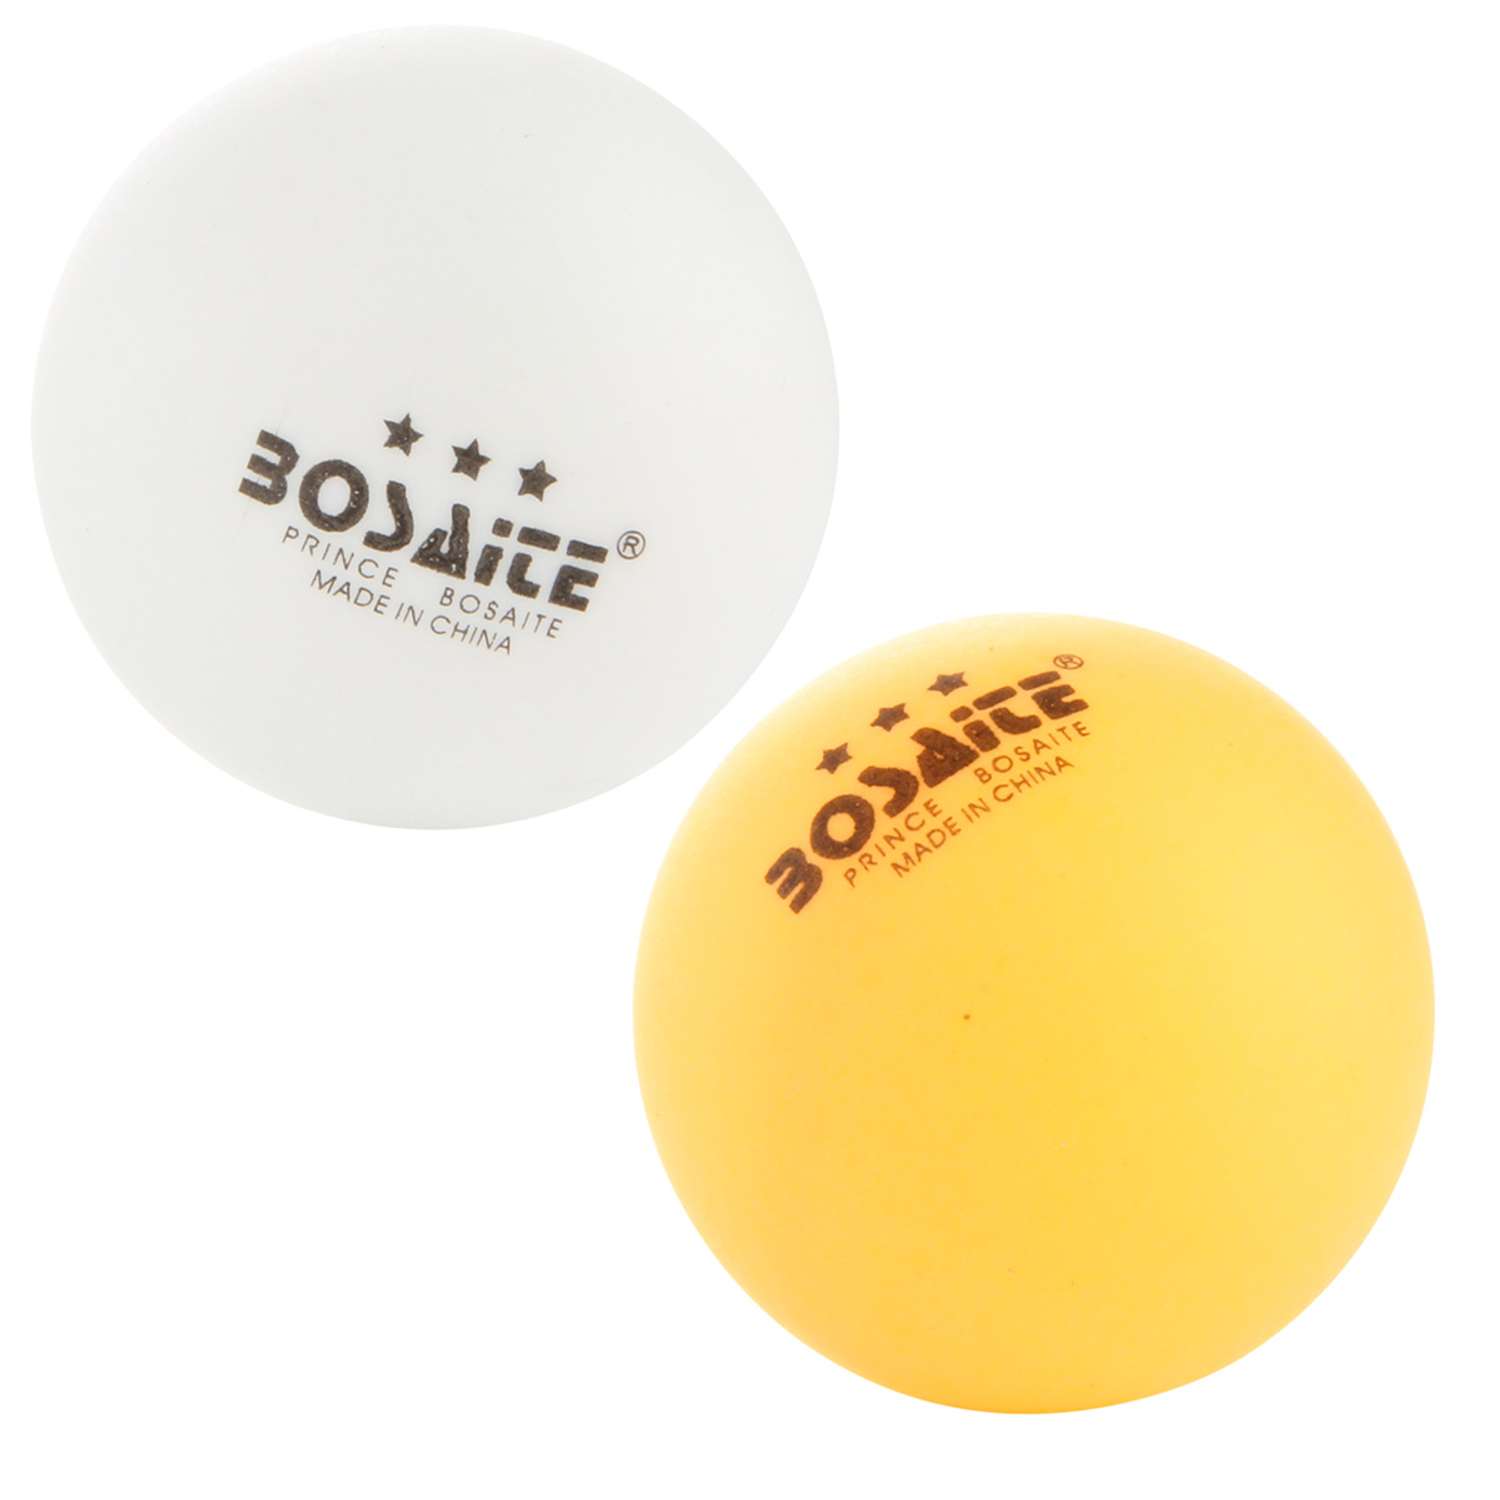 Мячи для настольного тенниса Veld Co пинг-понг 12 штук - фото 2